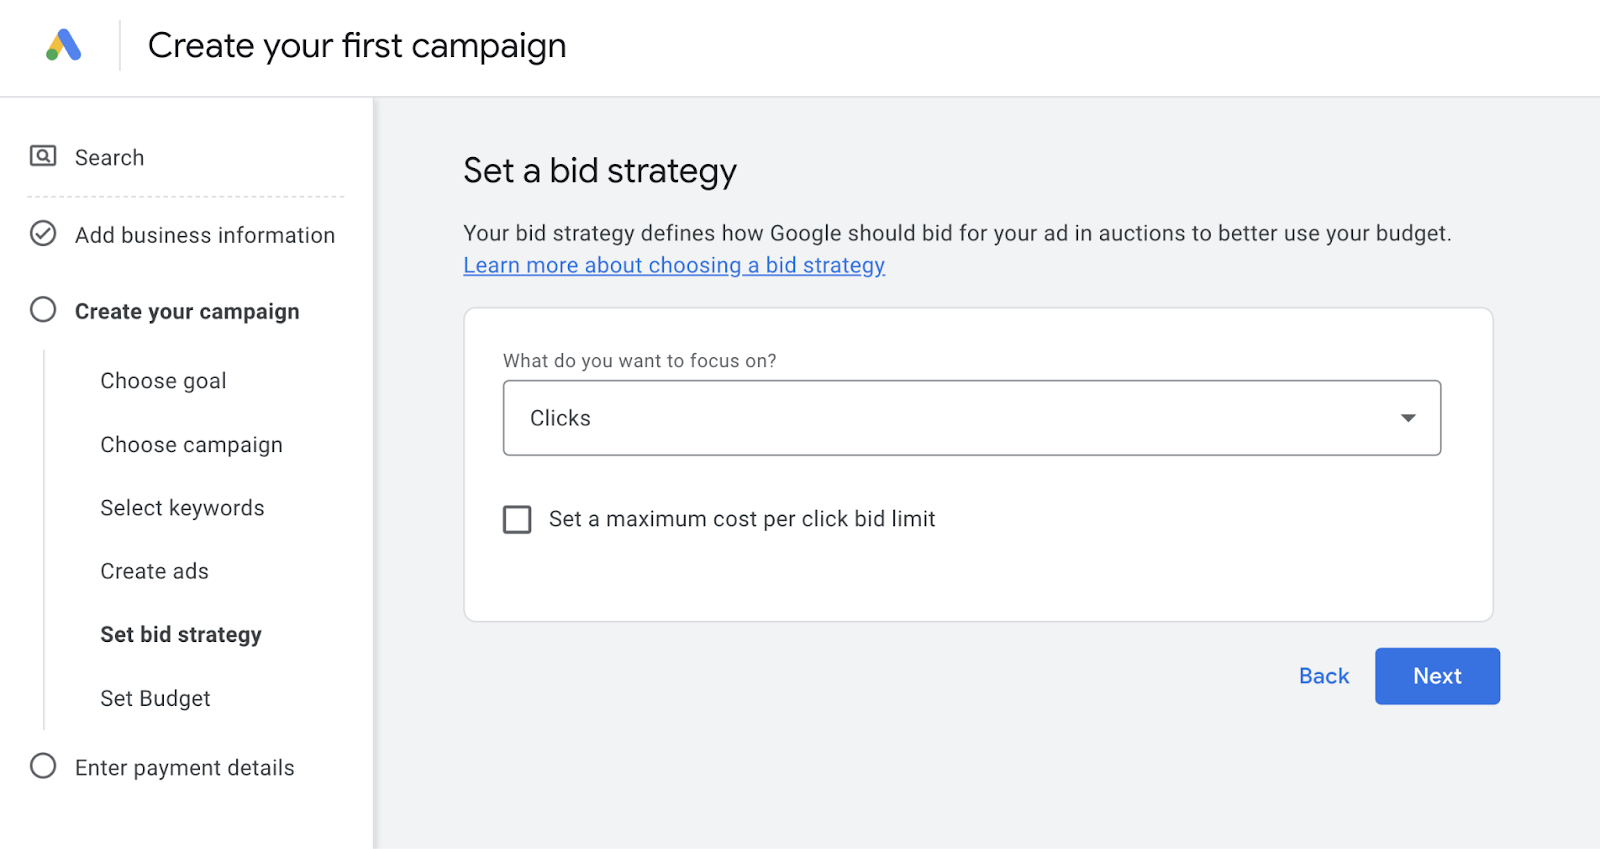 set a bid strategy page